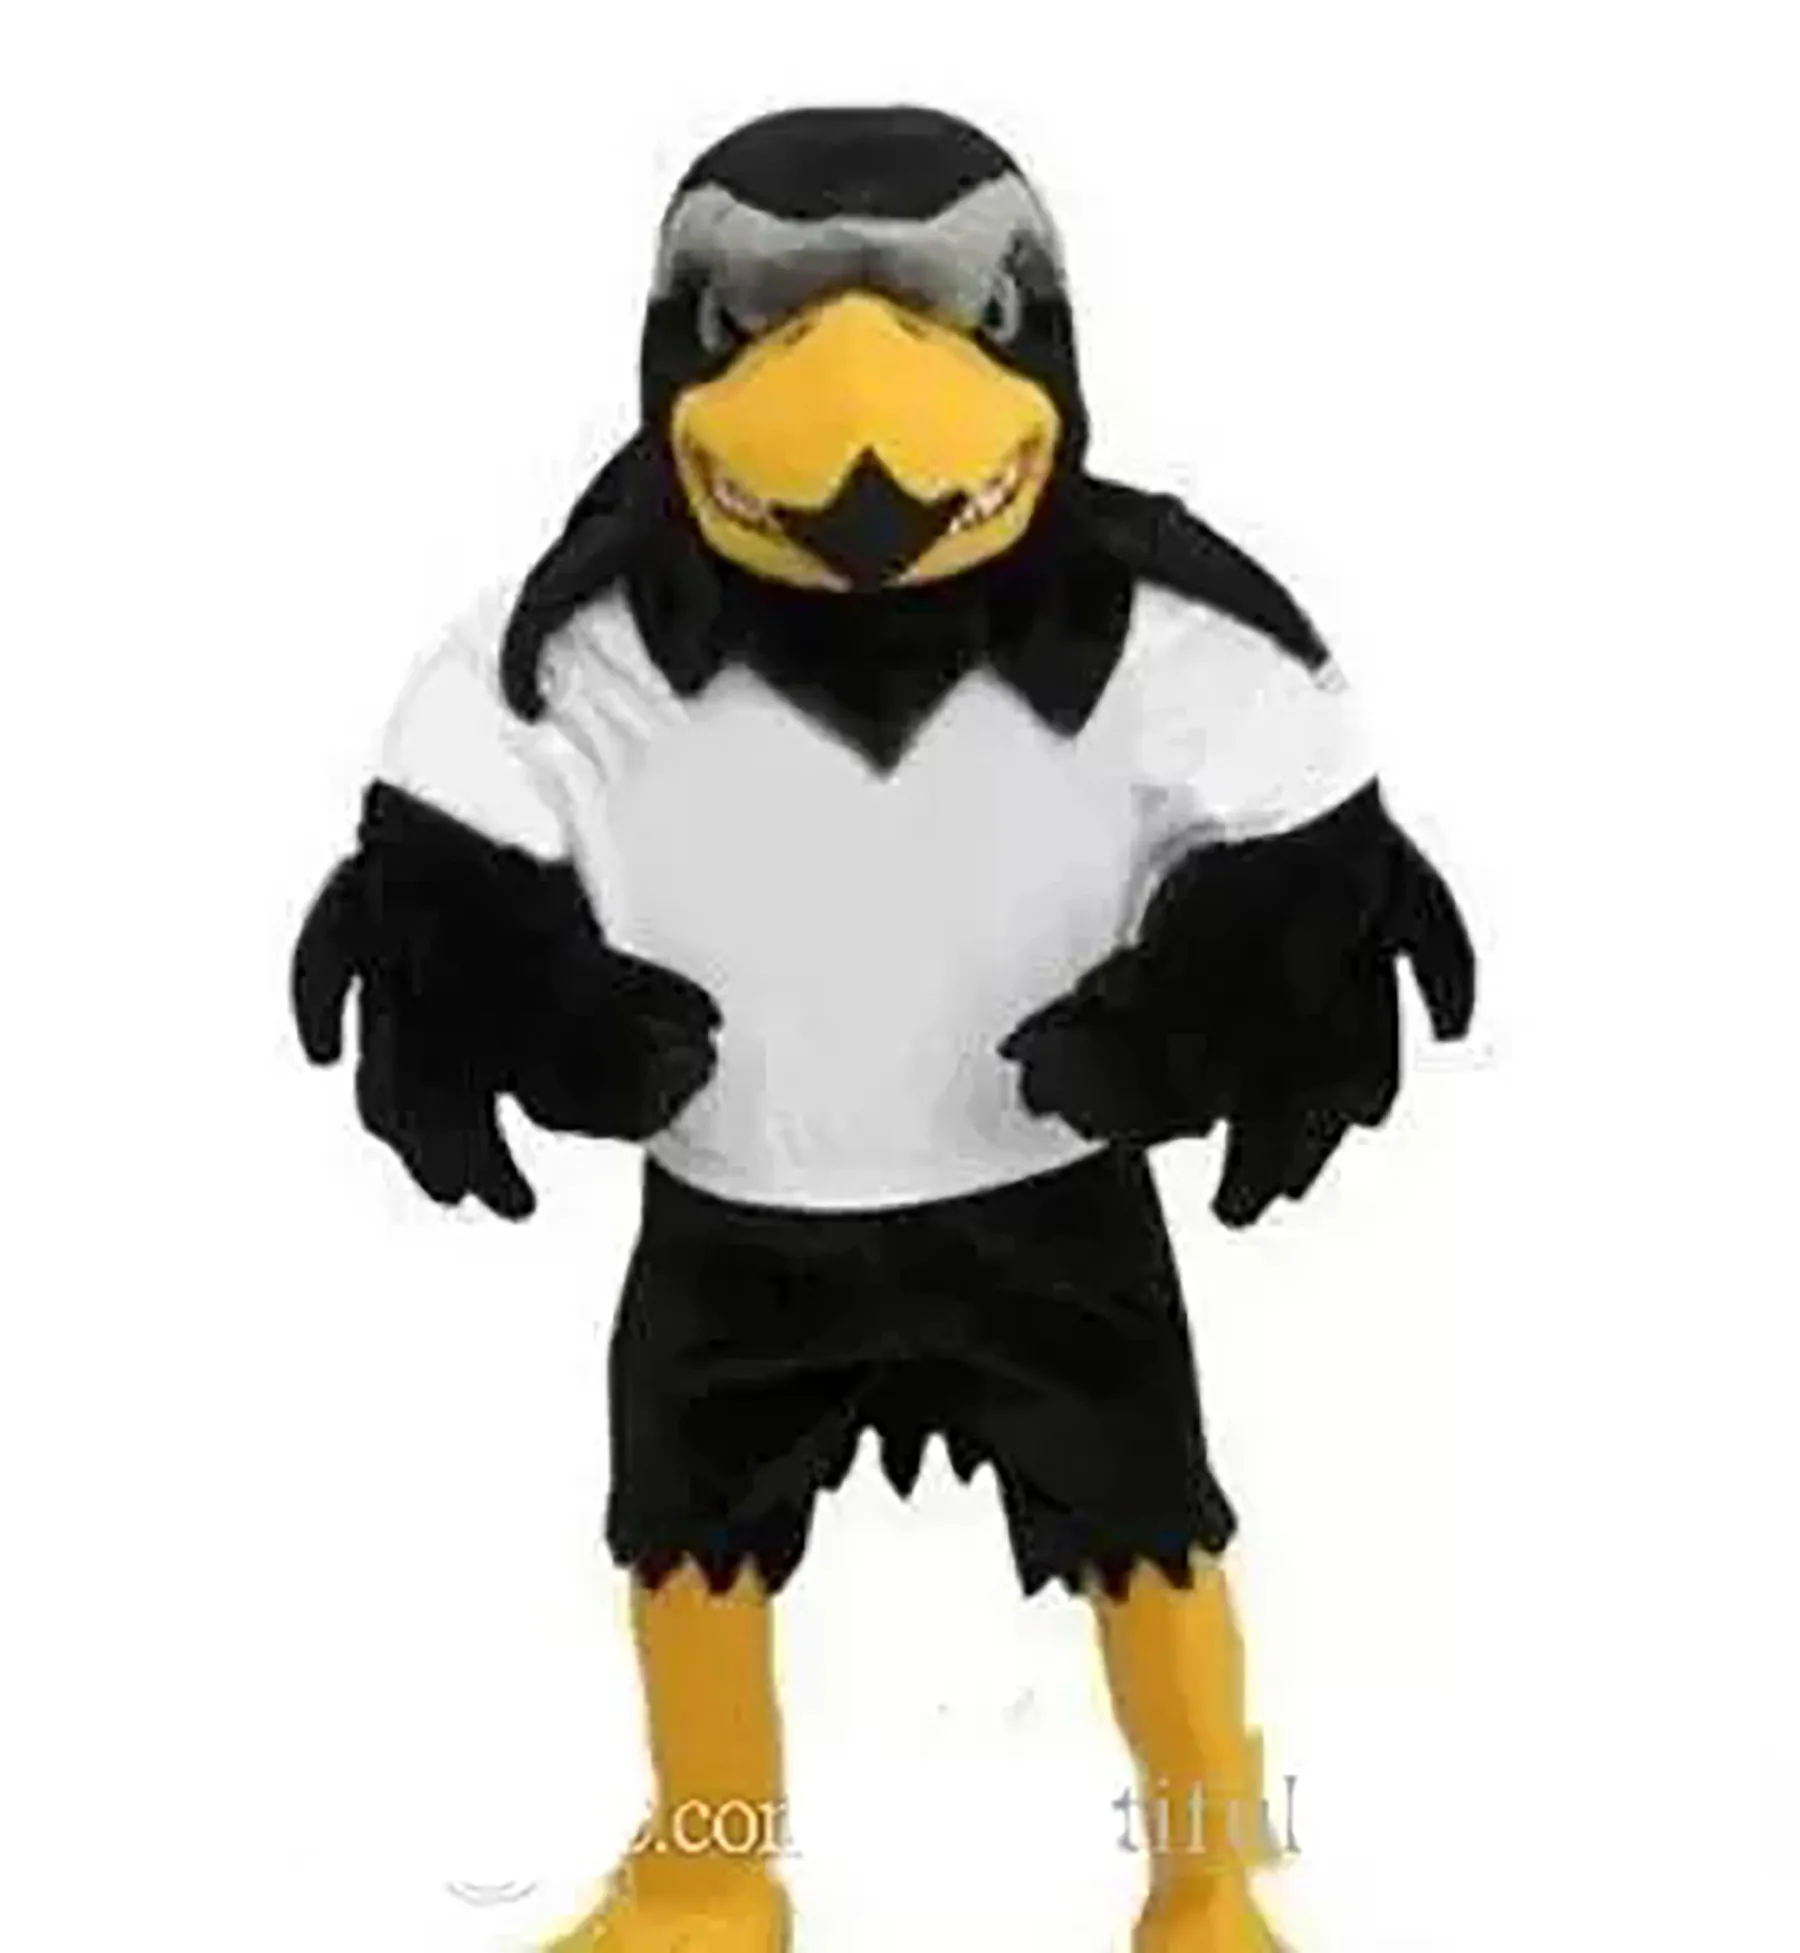 Professionelles, maßgeschneidertes Deluxe-Plüsch-Falken-Maskottchen-Kostüm für Erwachsene, Adler-Mascotte-Mascota-Karnevals-Partykostüm